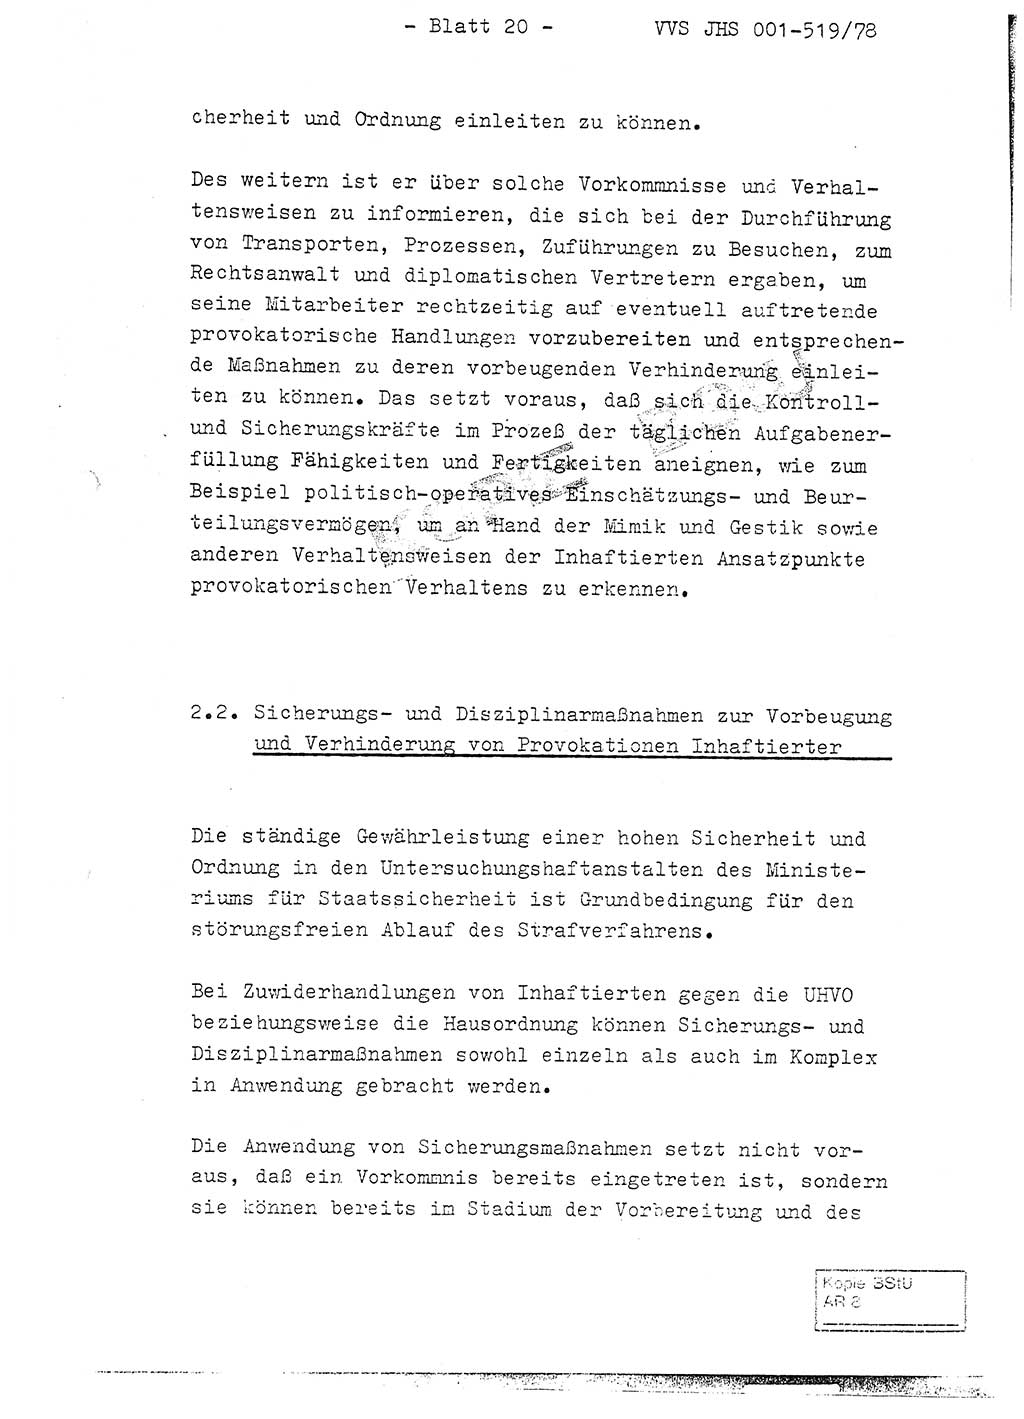 Fachschulabschlußarbeit Hauptmann Alfons Lützelberger (Abt. ⅩⅣ), Ministerium für Staatssicherheit (MfS) [Deutsche Demokratische Republik (DDR)], Juristische Hochschule (JHS), Vertrauliche Verschlußsache (VVS) 001-519/78, Potsdam 1978, Blatt 20 (FS-Abschl.-Arb. MfS DDR JHS VVS 001-519/78 1978, Bl. 20)